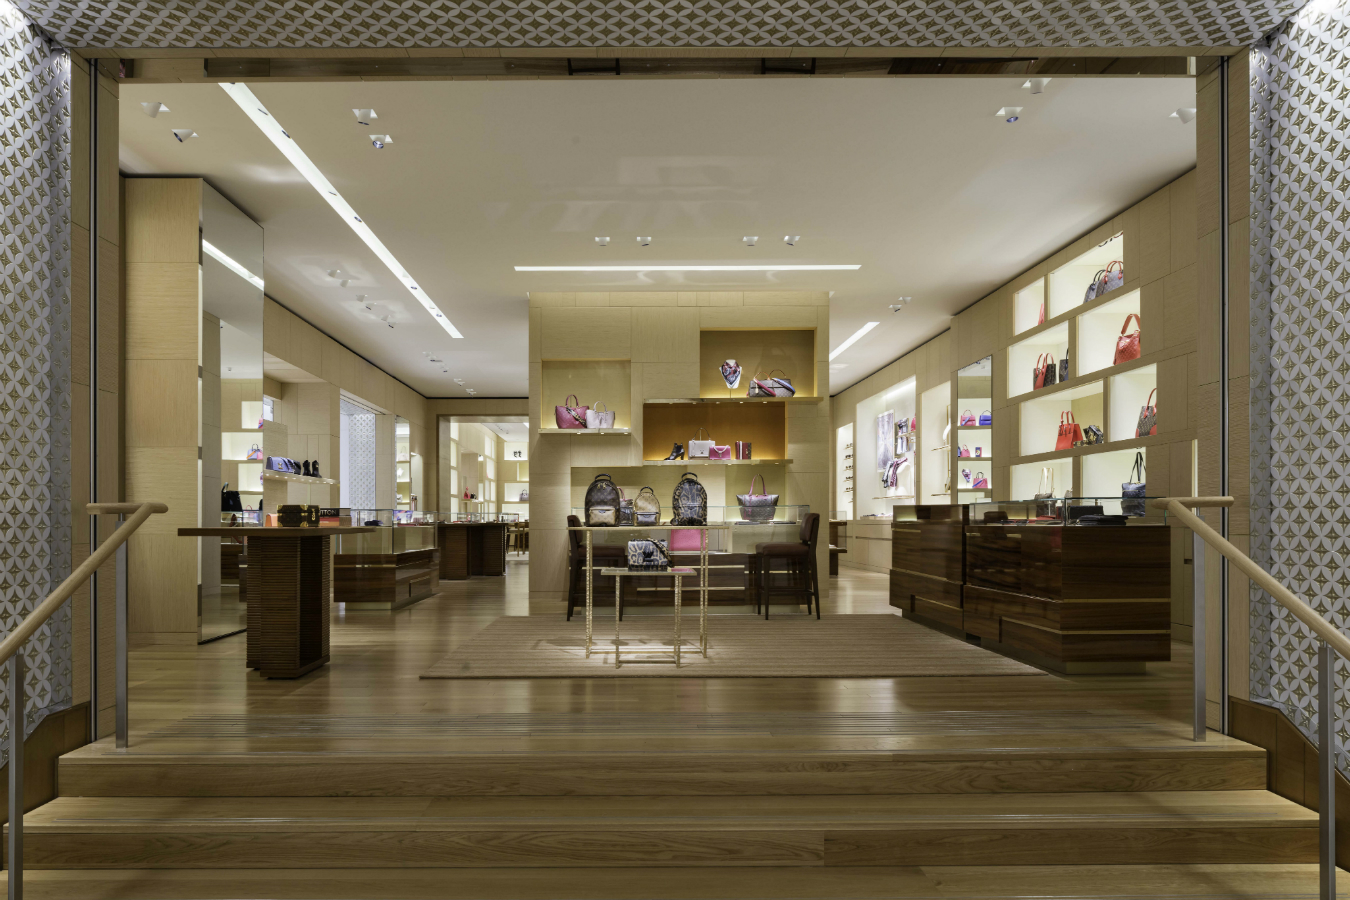 Louis Vuitton Holt Renfrew Vancouver Store, Canada